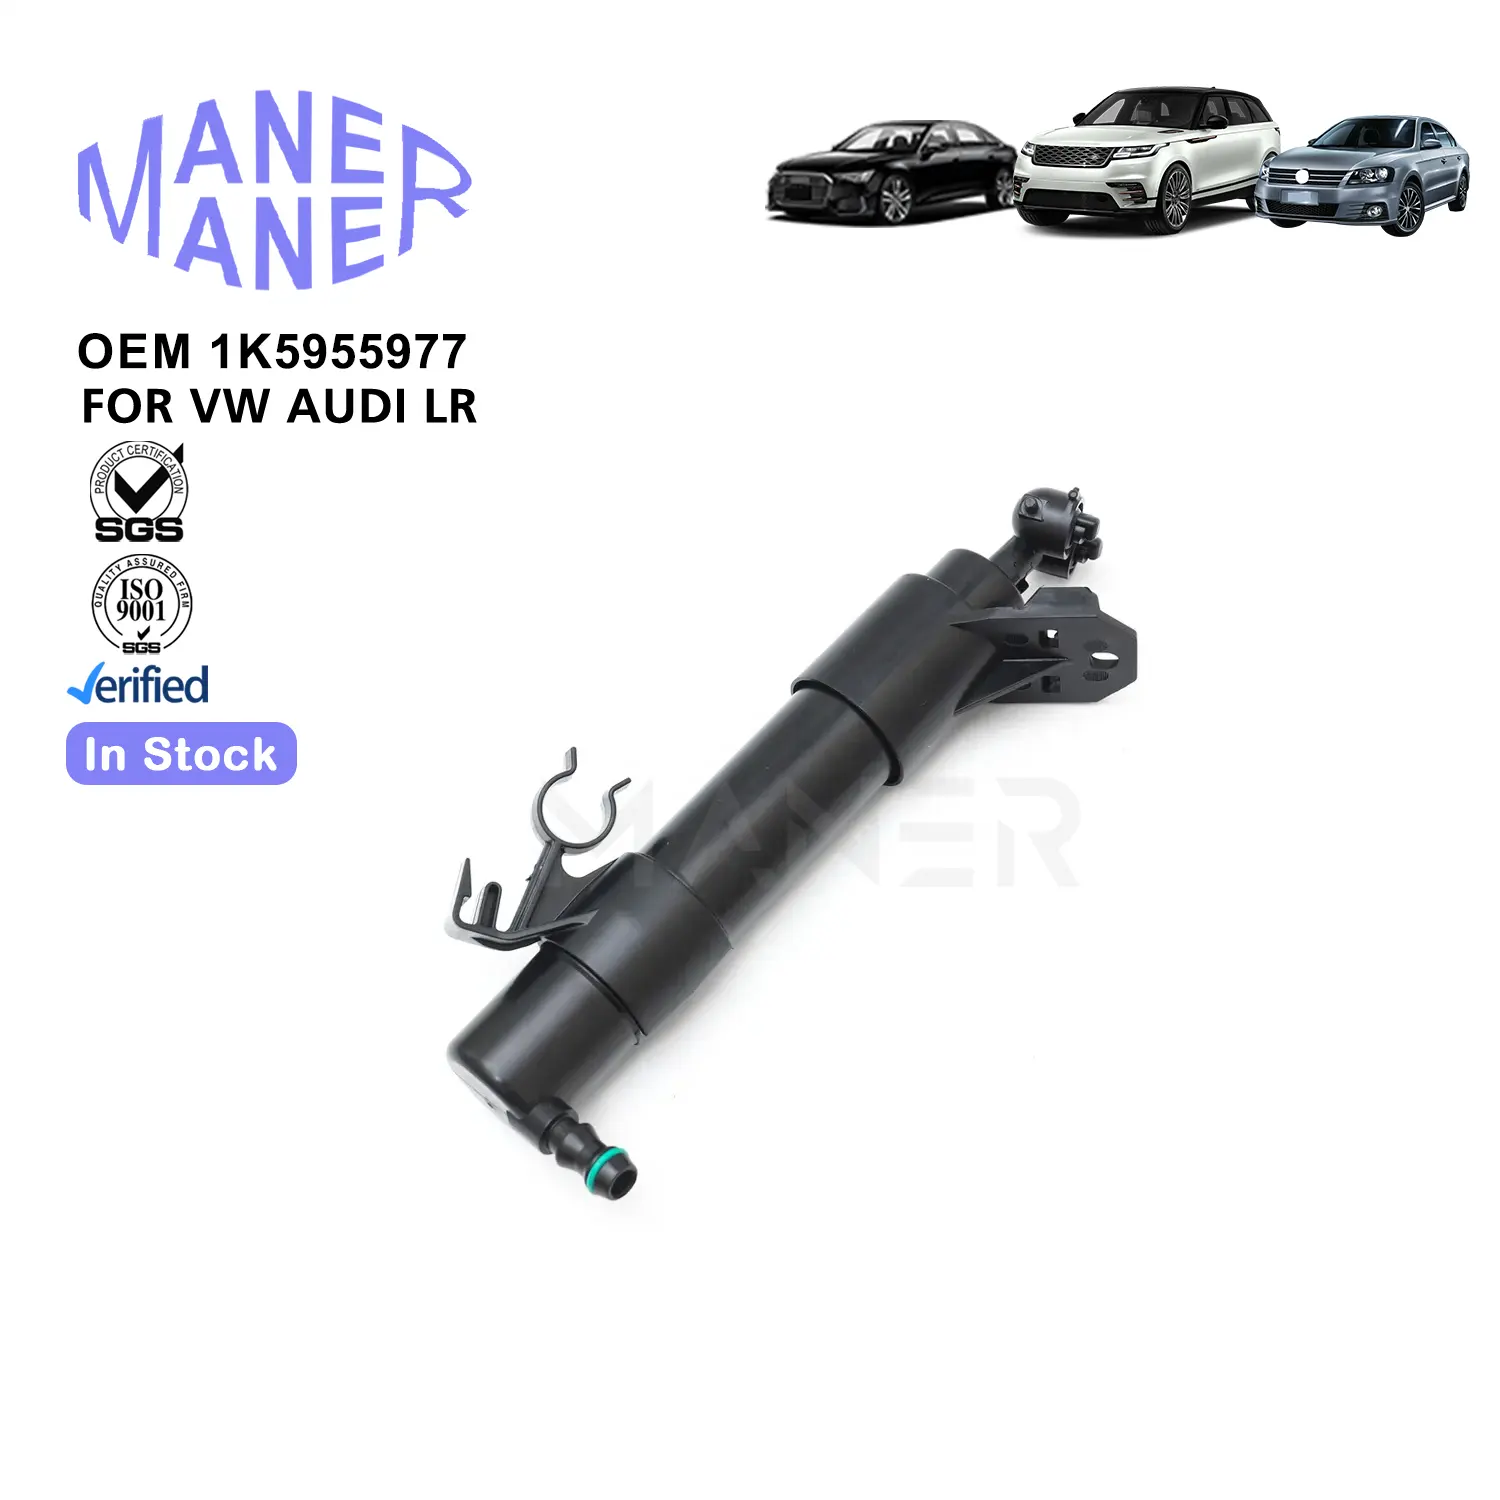 Sistem pendingin MANER manufacture produsen nozel pembersih lampu depan mobil buatan dengan baik untuk Volkswagen Audi